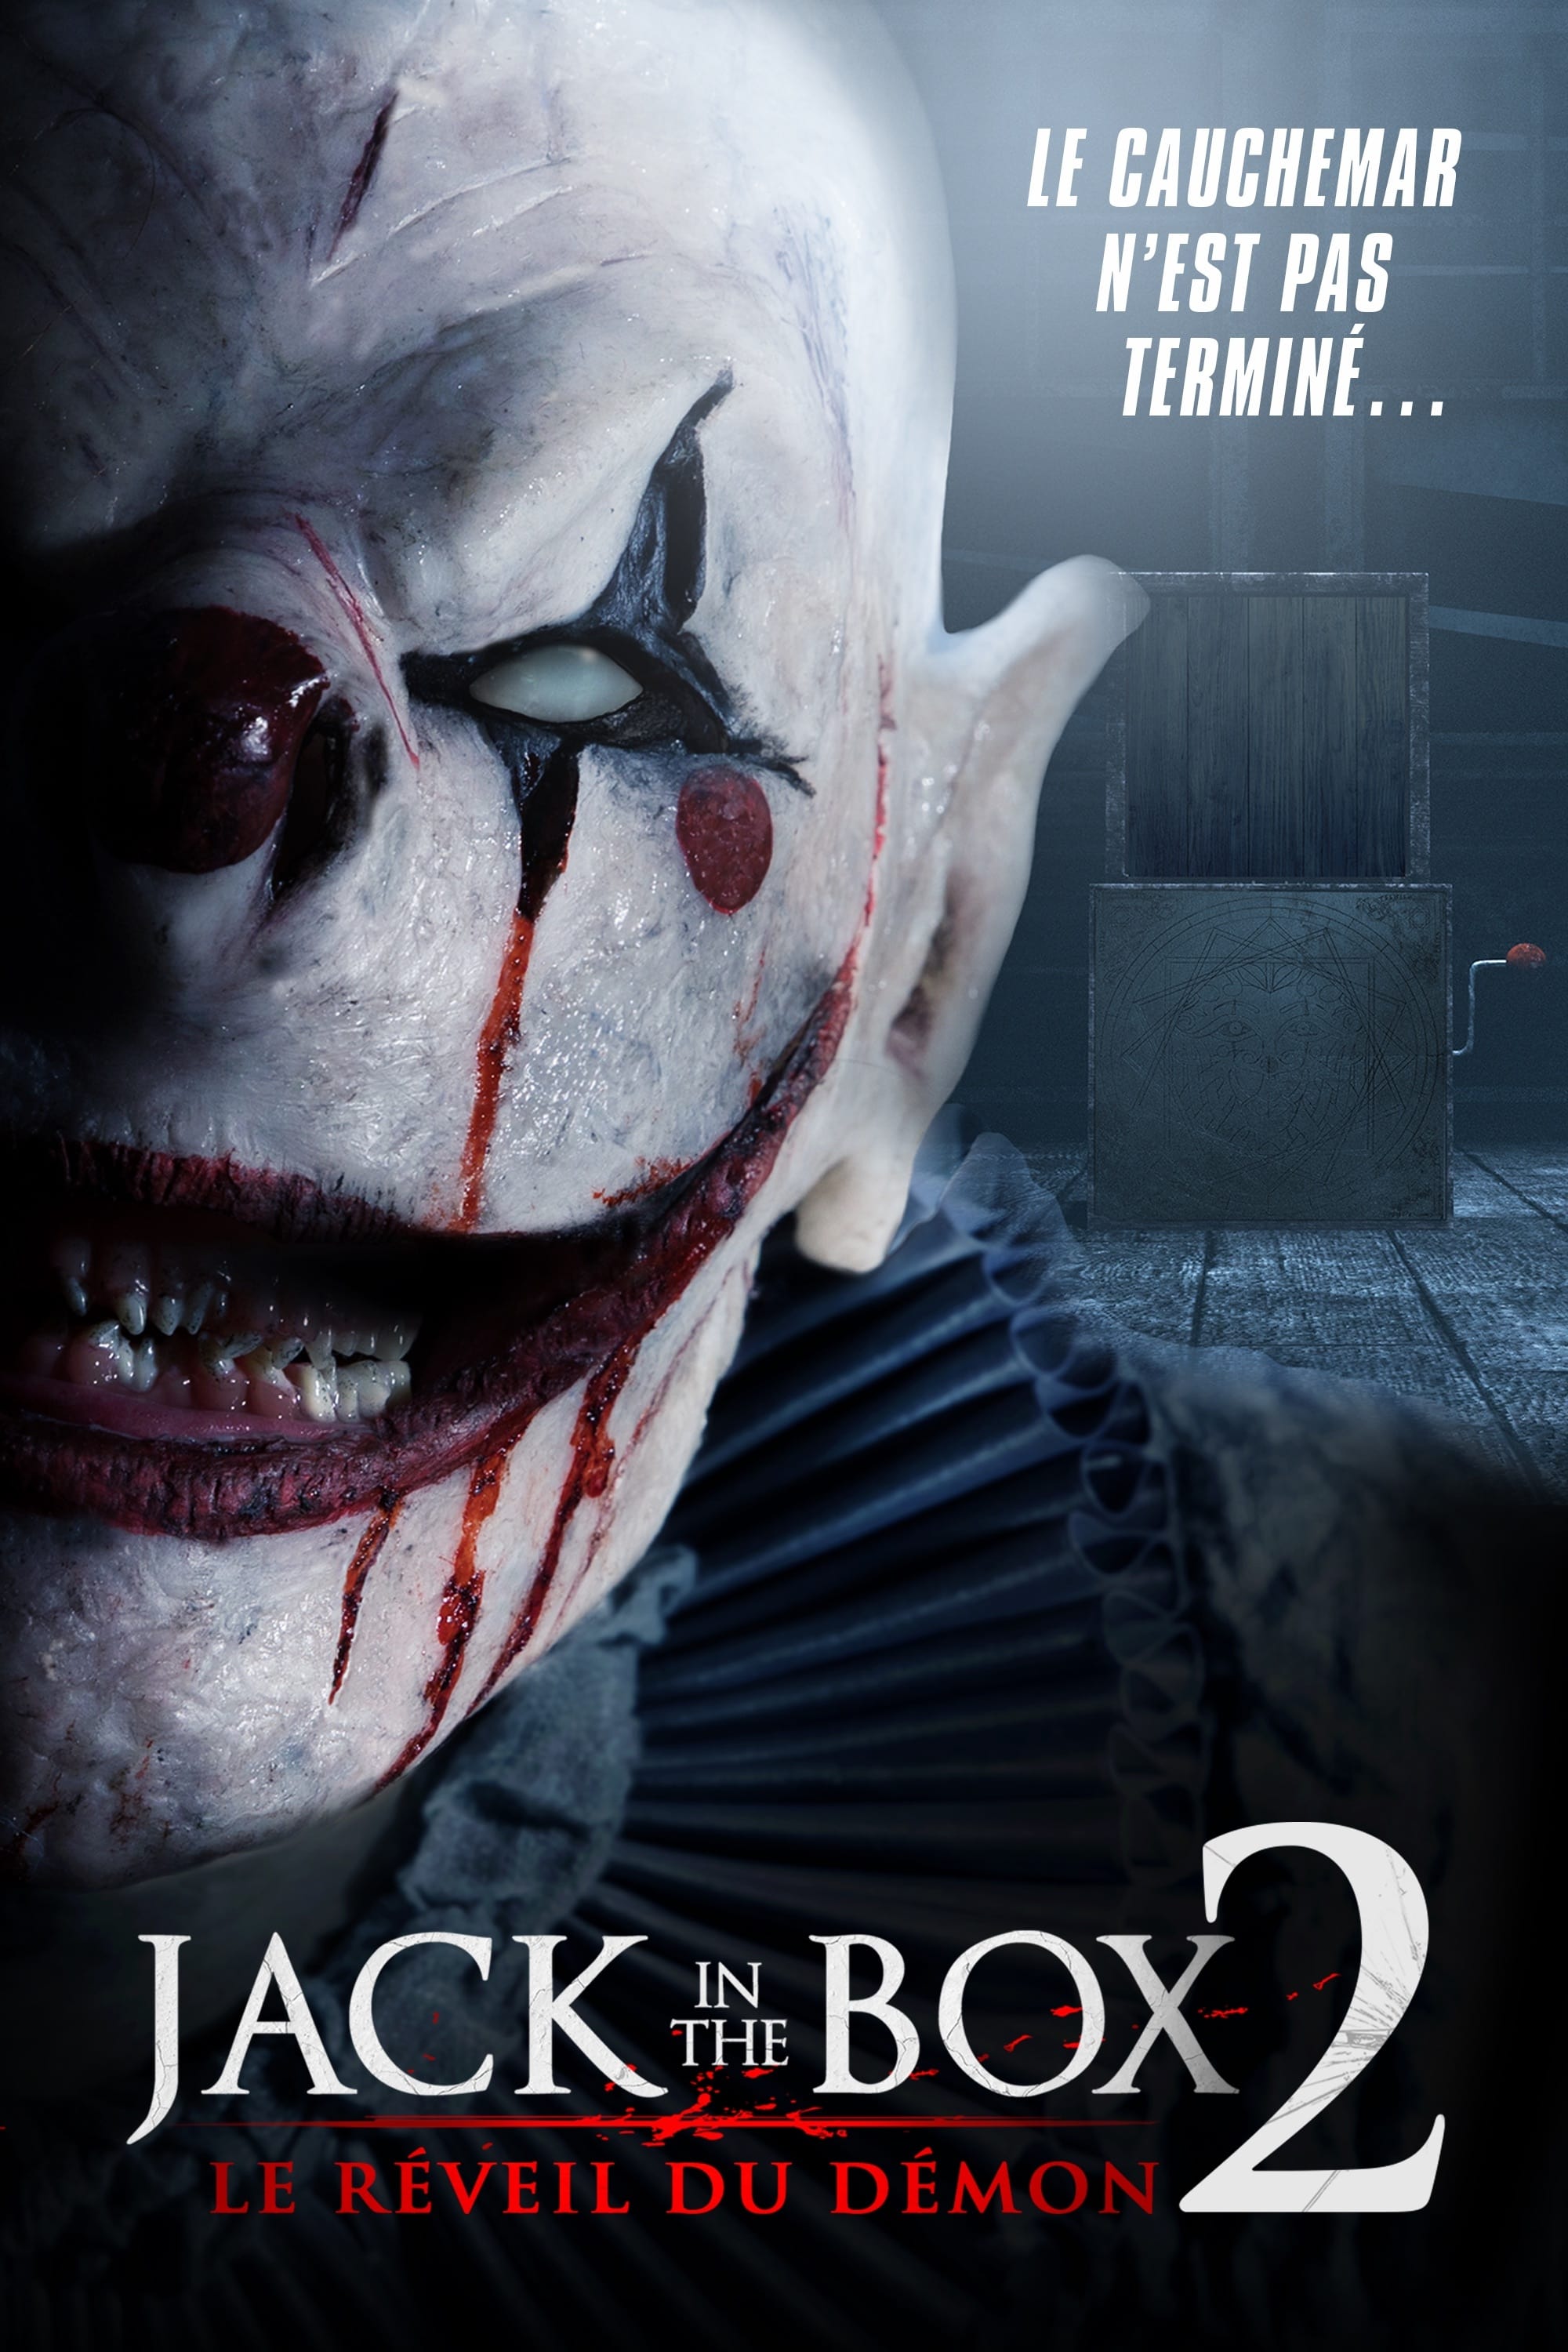 The Box Film Horreur Jack in the Box 2 : Le Réveil du démon (Film, 2022) — CinéSéries